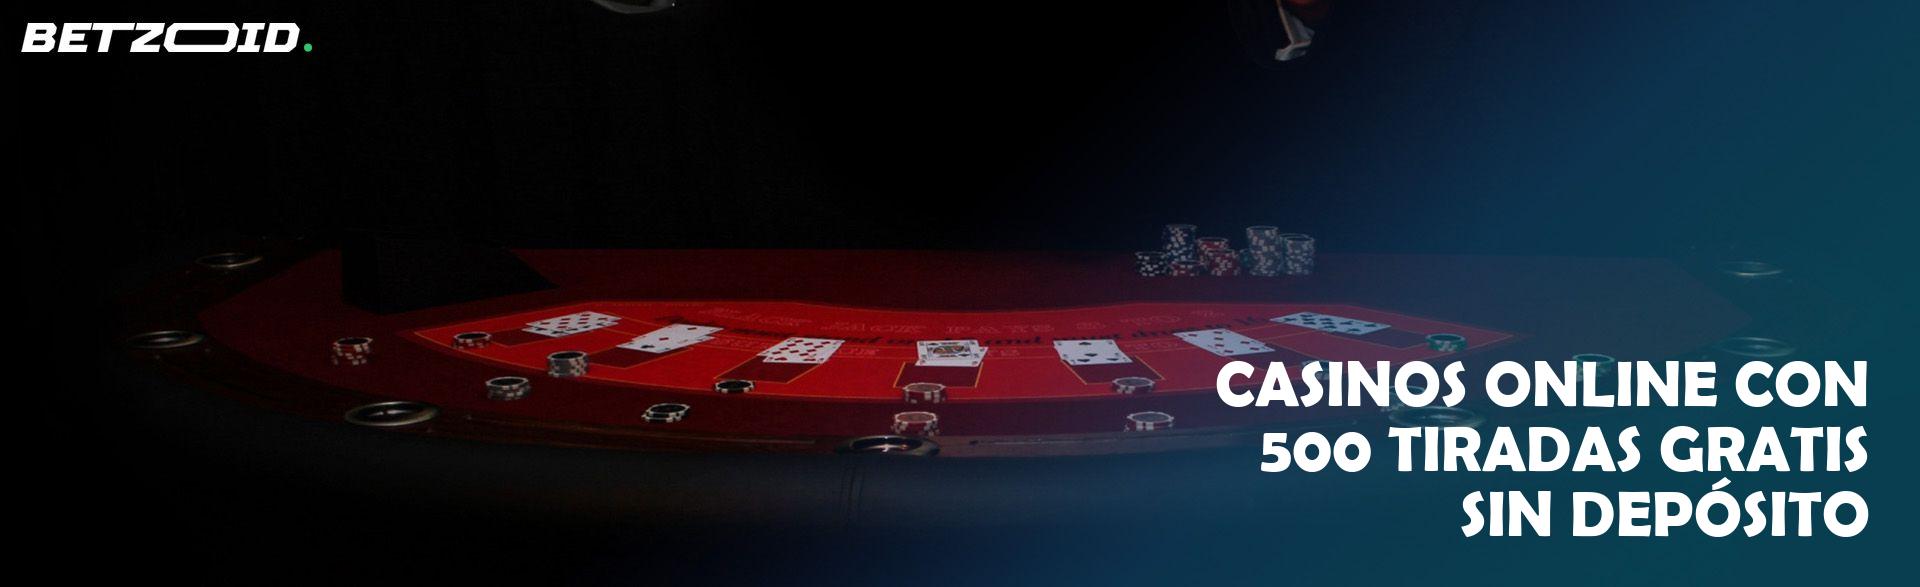 Casinos Online con 500 Tiradas Gratis sin Depósito.